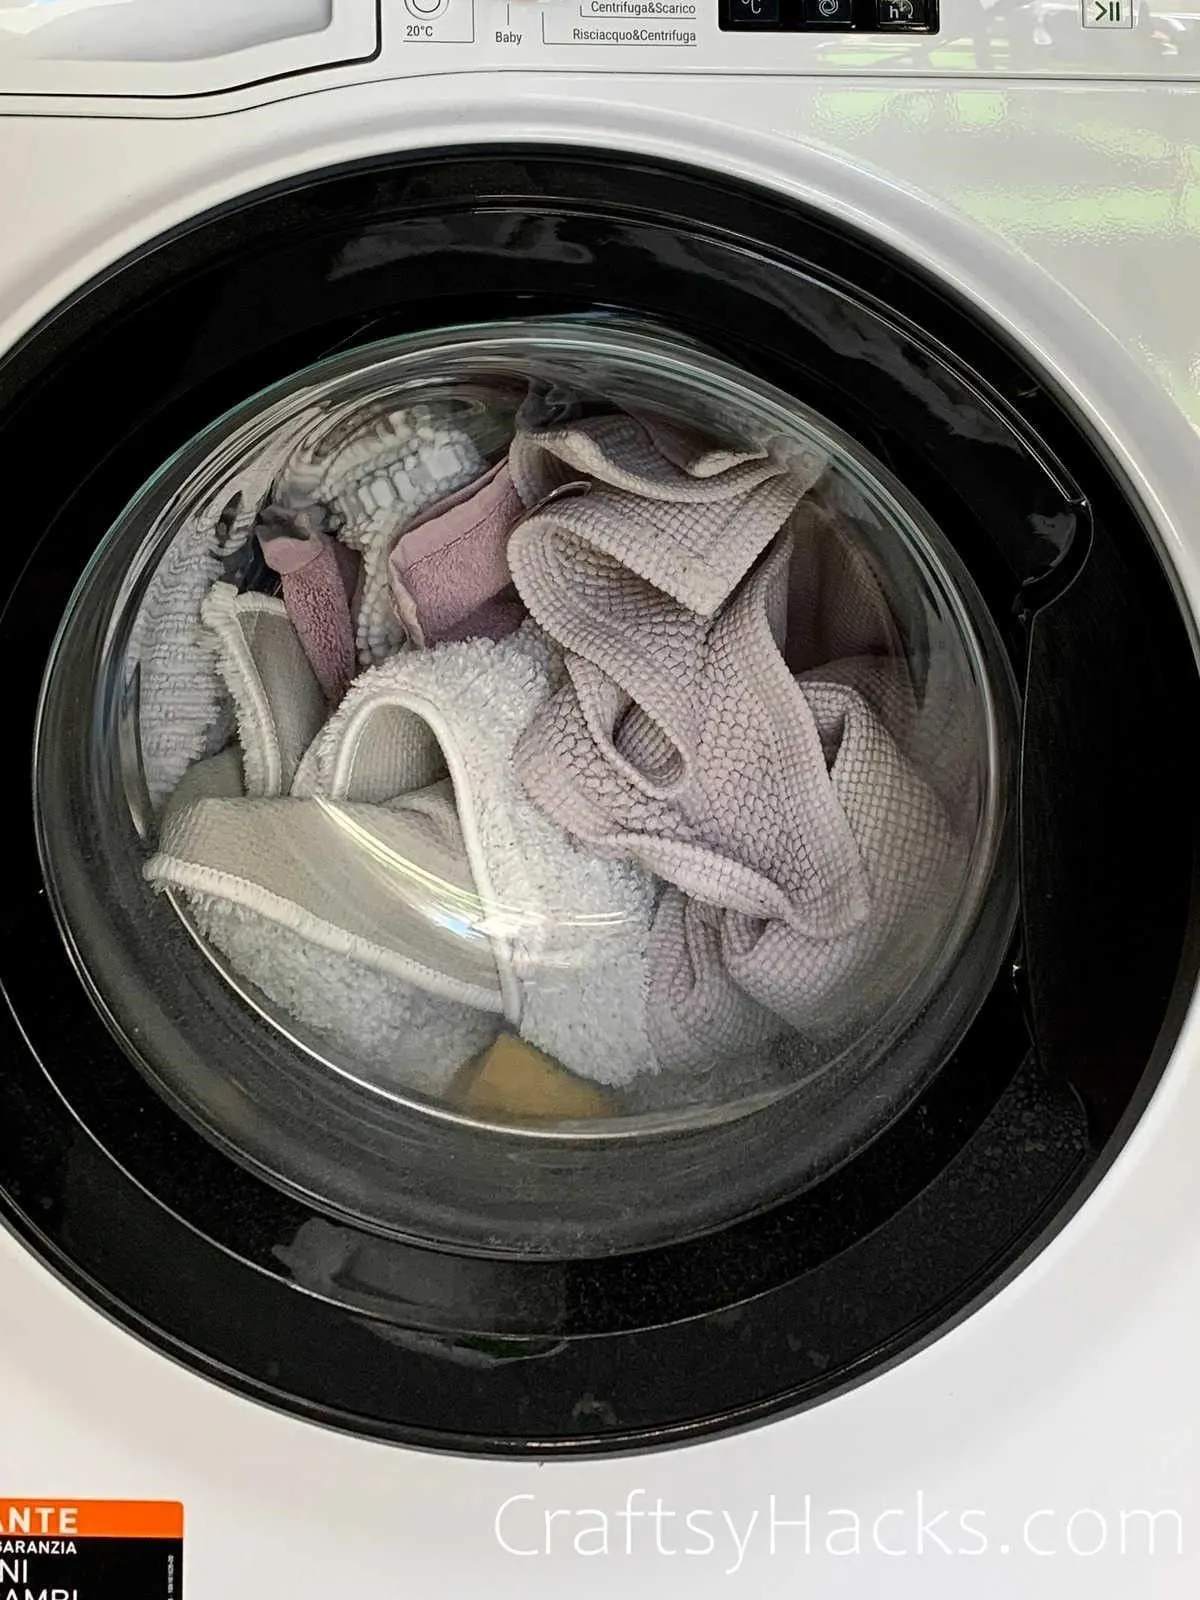 sanitise dish wash in washing maching